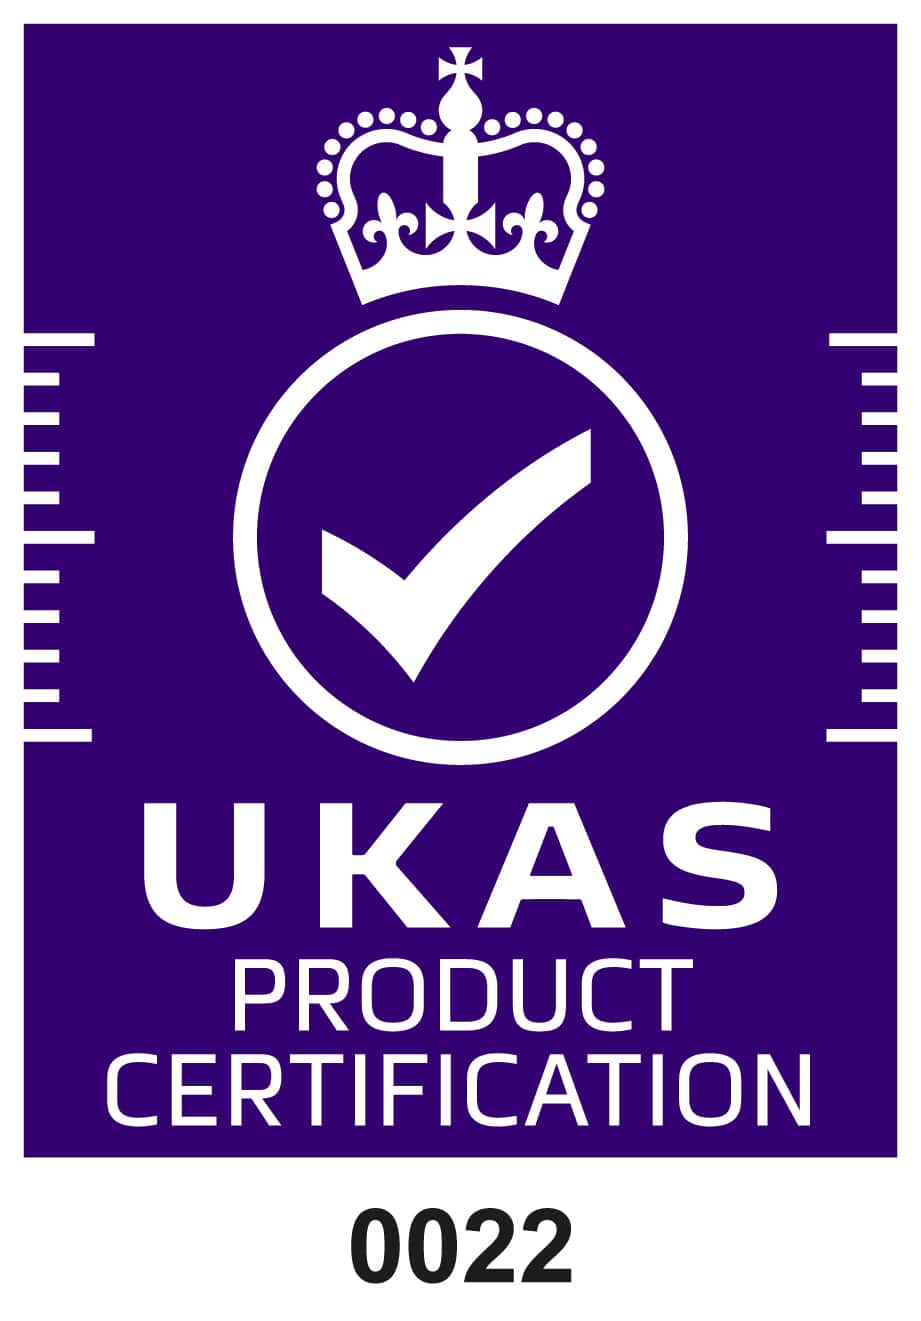 Símbolo de acreditación Ukas blanco sobre morado certificación de producto